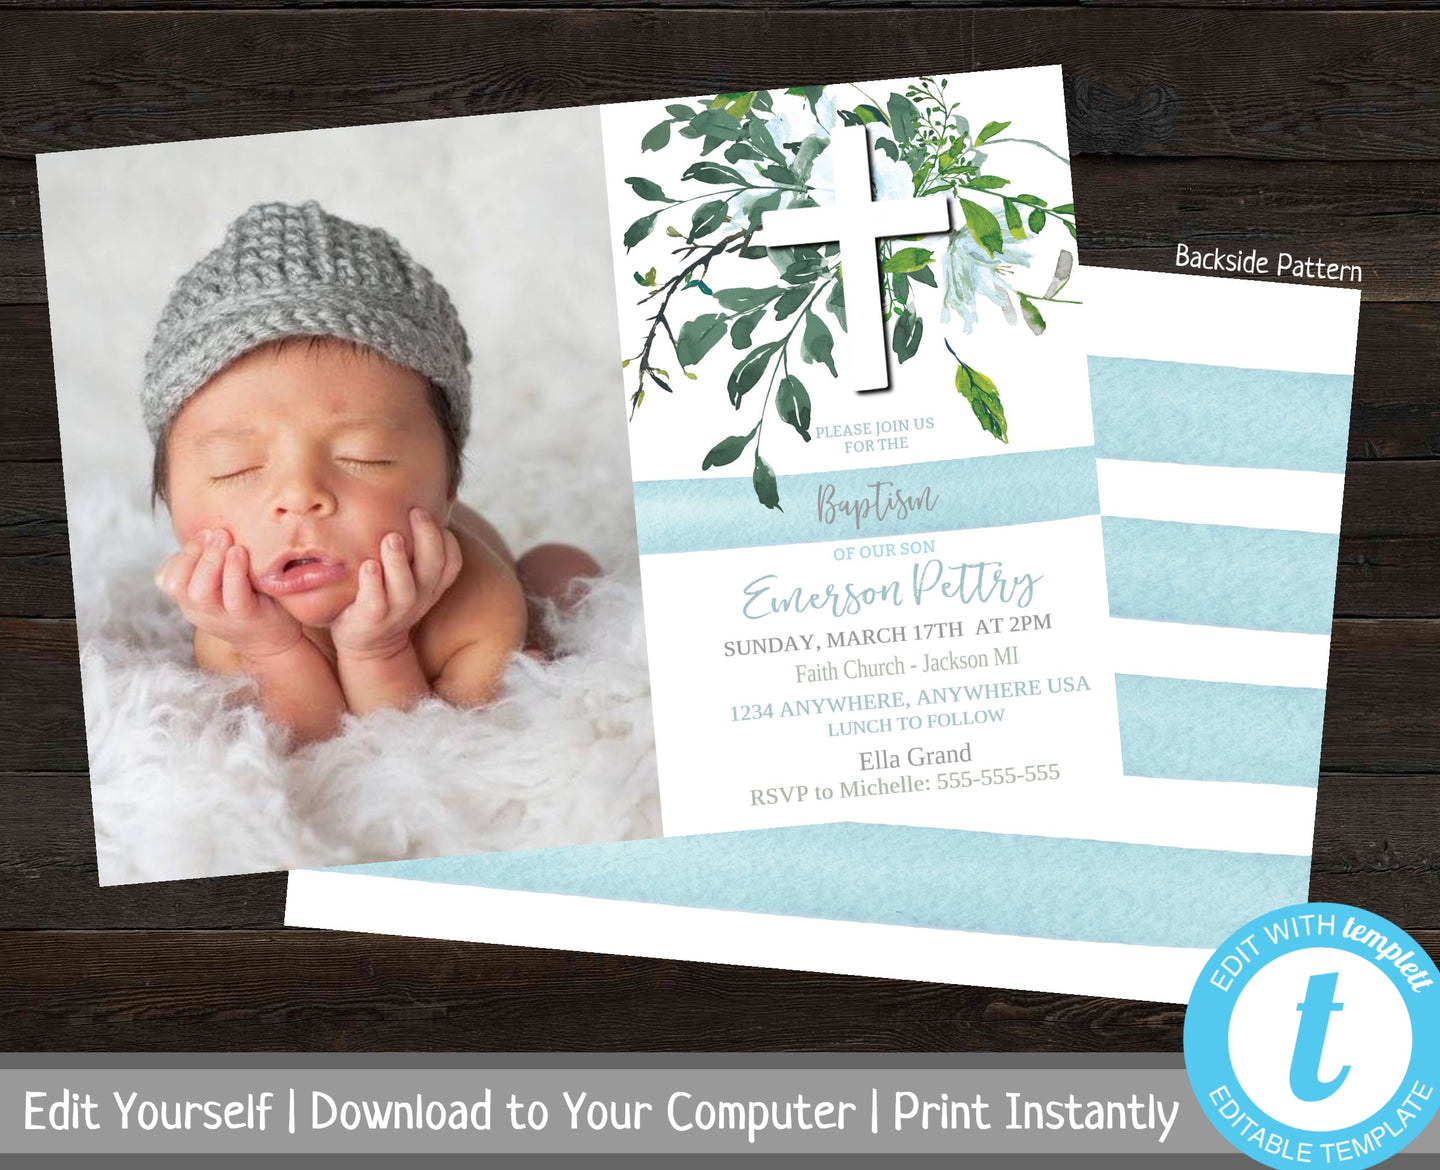 Printable Photo Baptism Invite, Boy Baptism Invitation, Christening Invite, Editable Invitation, Baby Boy Dedication, Greenery, Naming Day